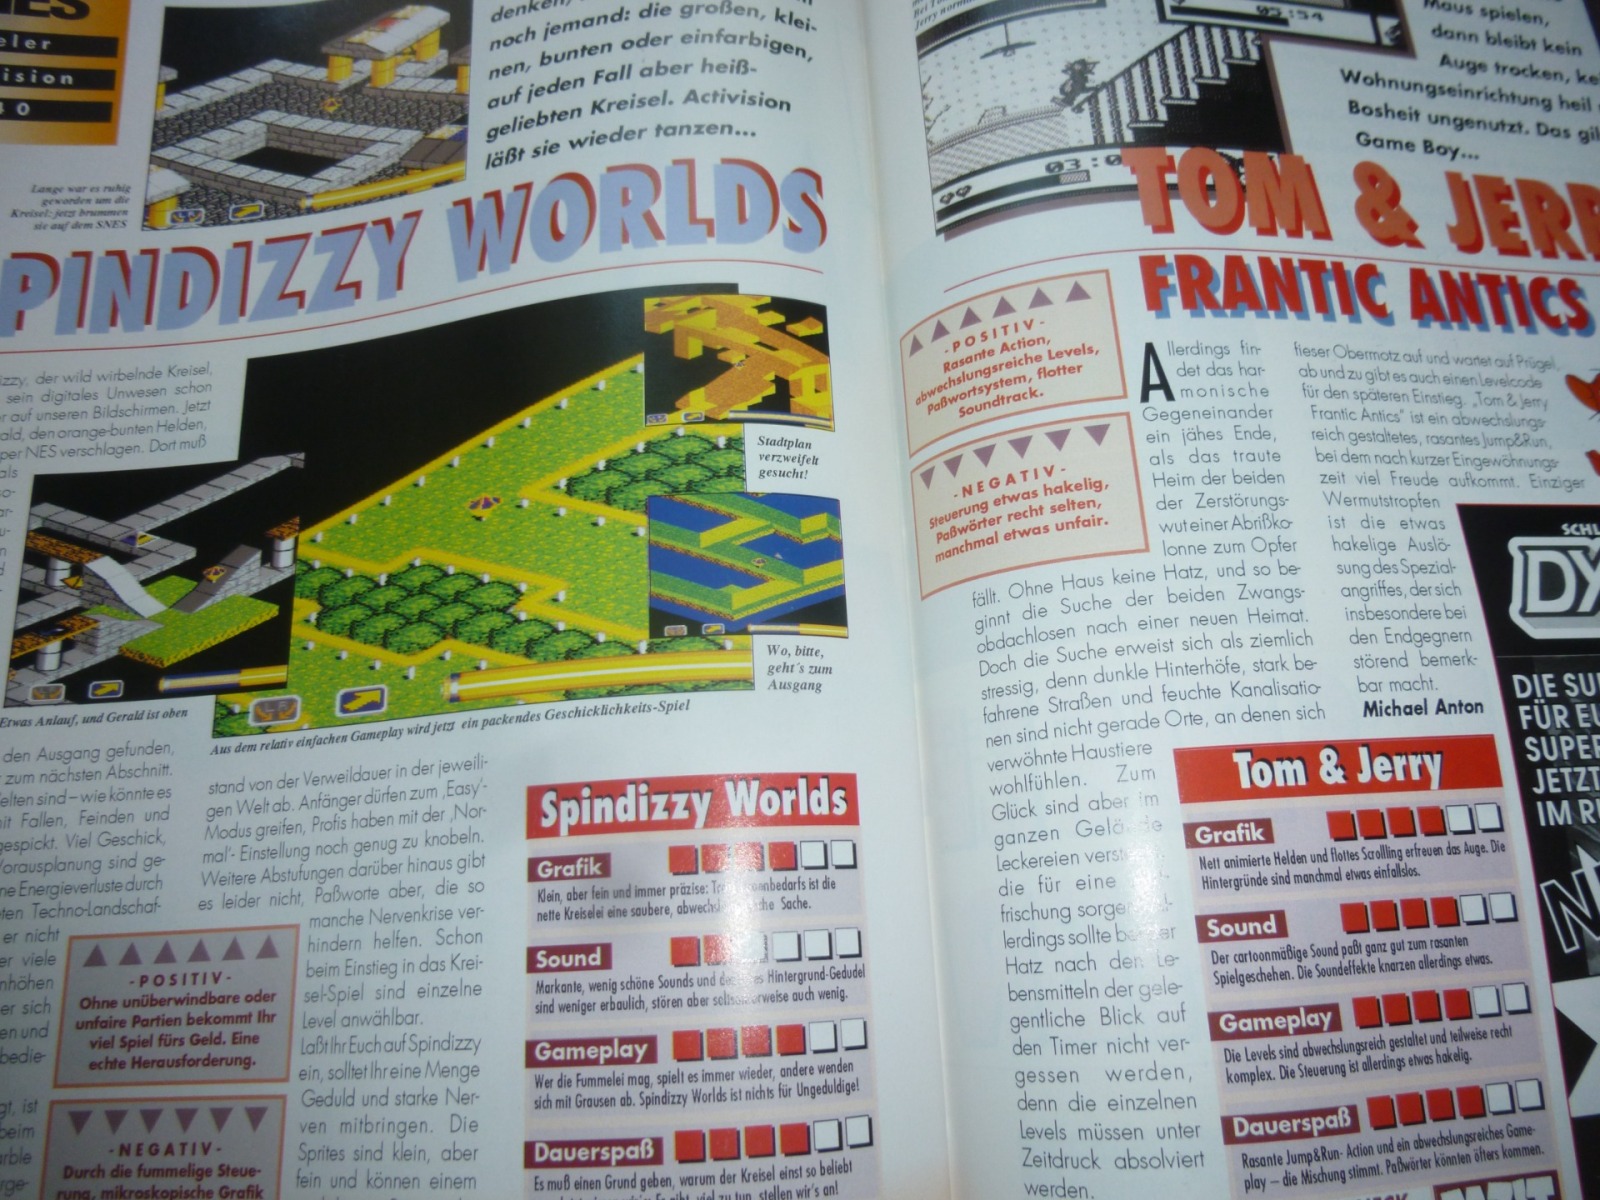 TOTAL Das unabhängige Magazin - 100 Nintendo - Ausgabe 9/93 1993 29